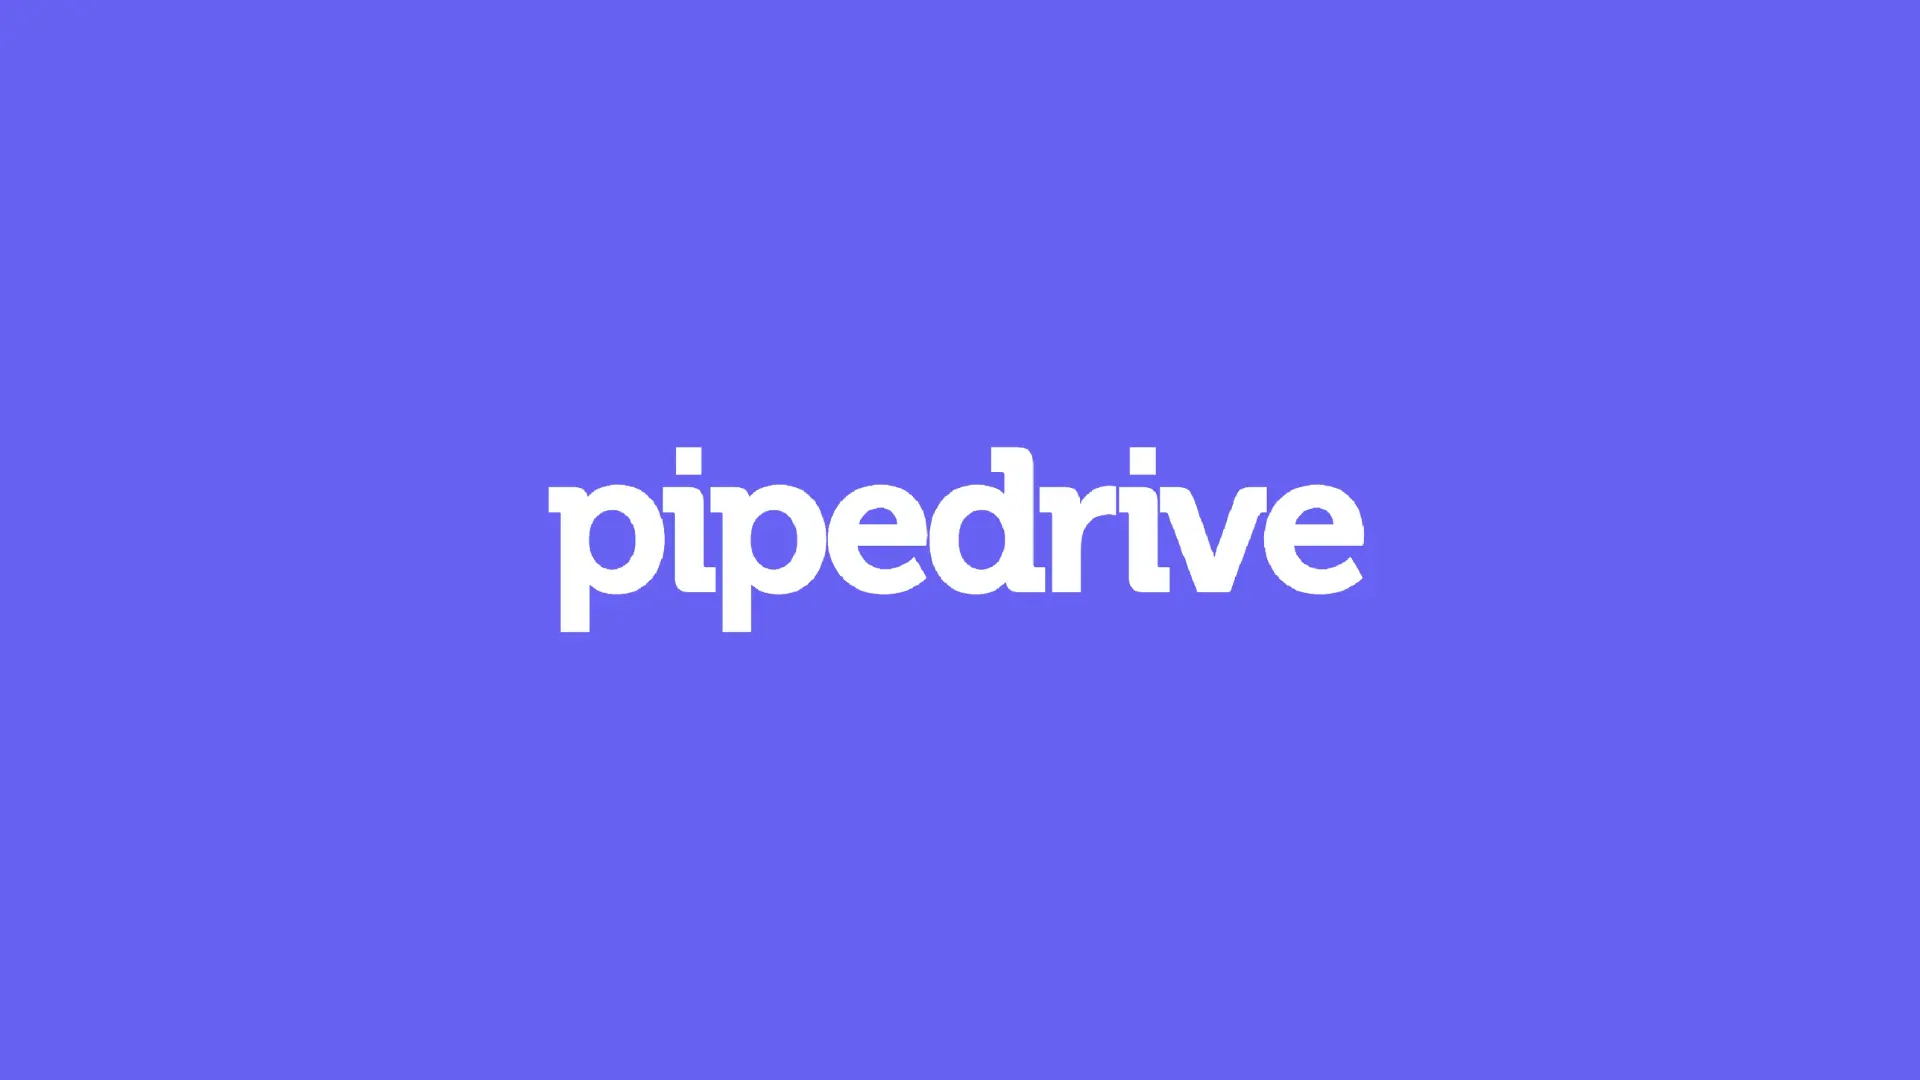 PipeDrive brand